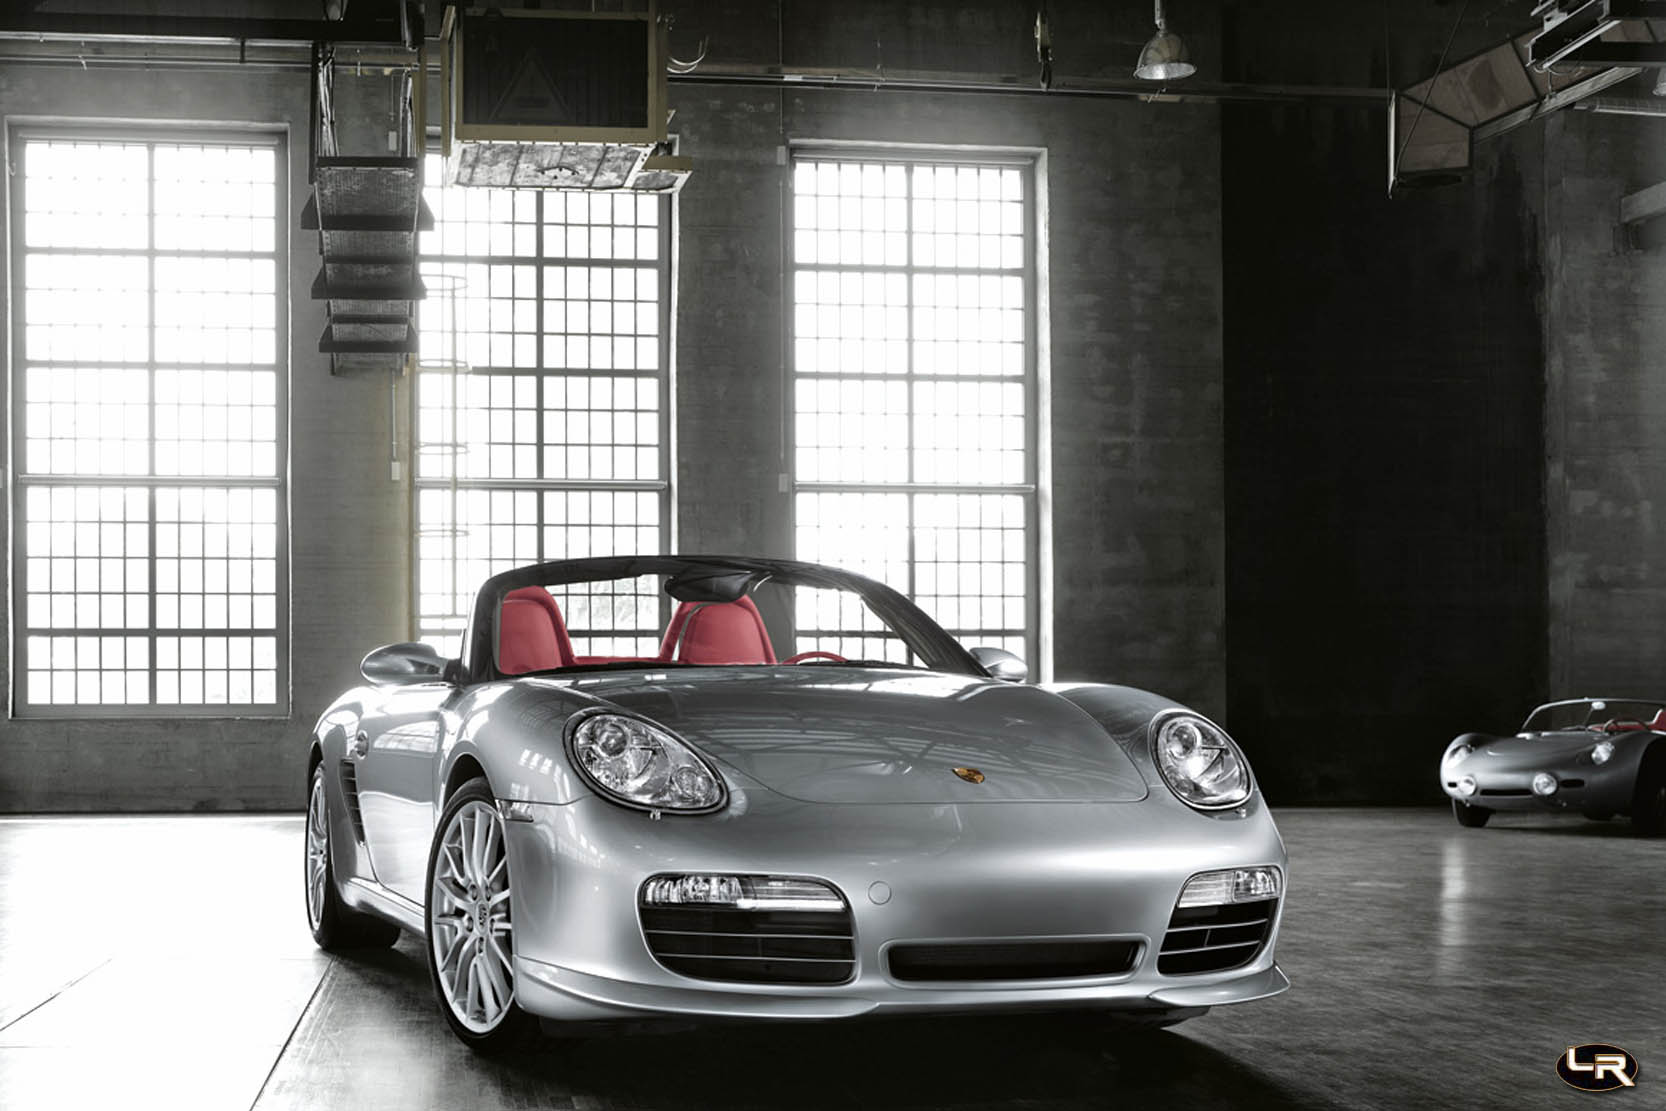 Image principale de l'actu: Porsche boxster la video les photos la fiche technique 